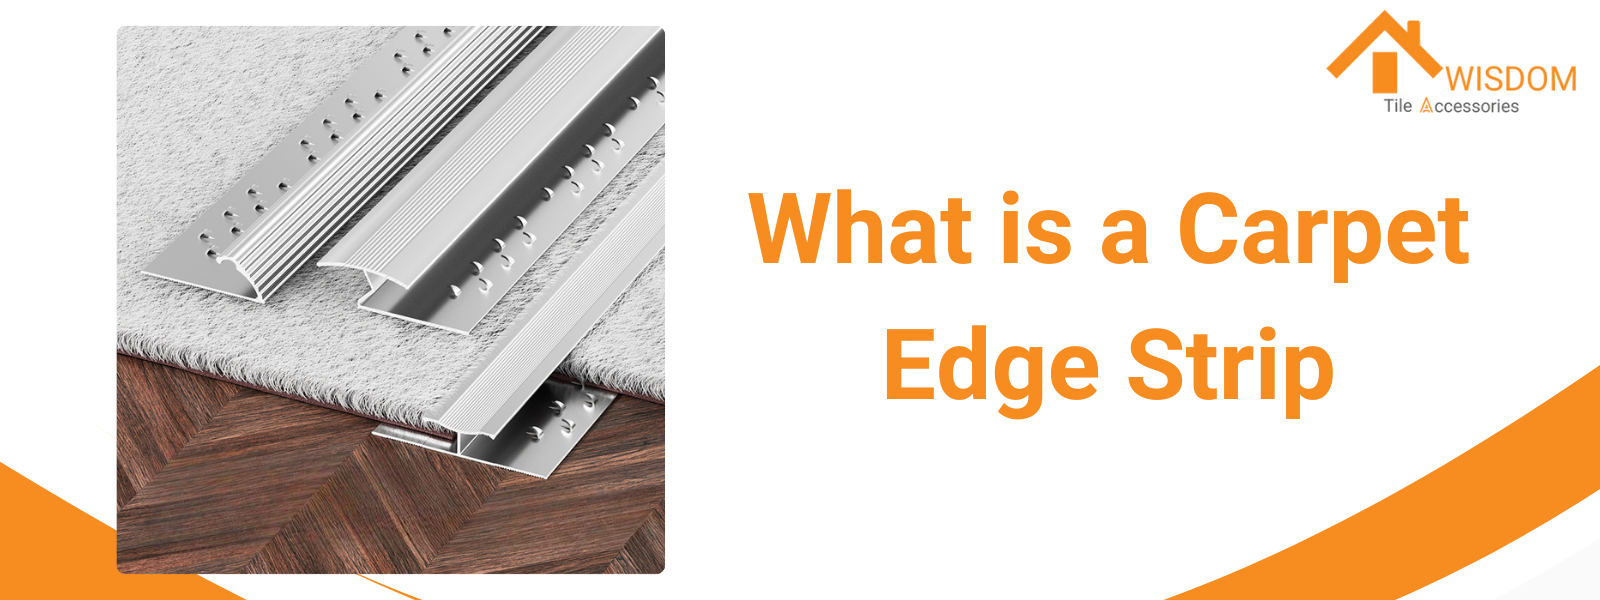 What is a Carpet Edge Strip